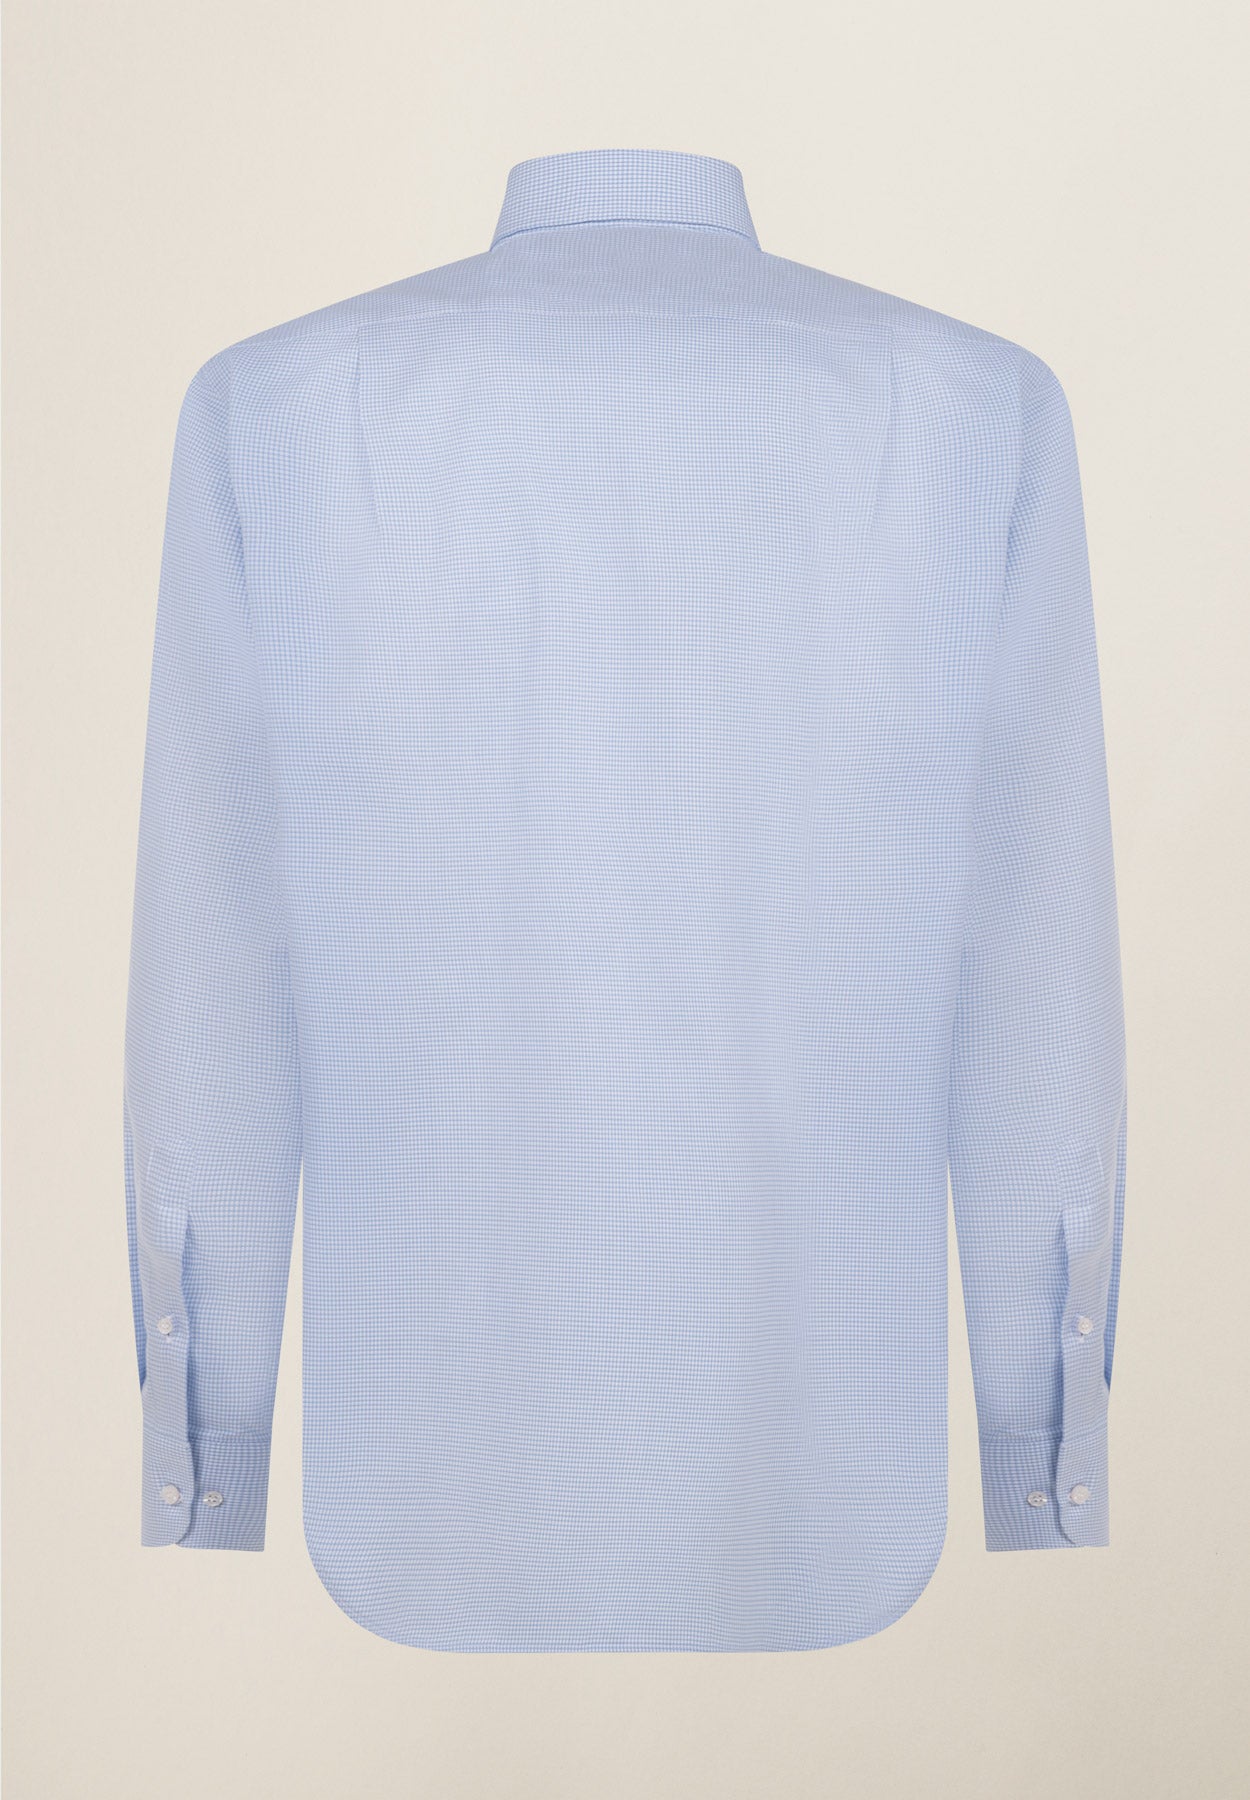 Camicia azzurra quadretto cotone comfort fit